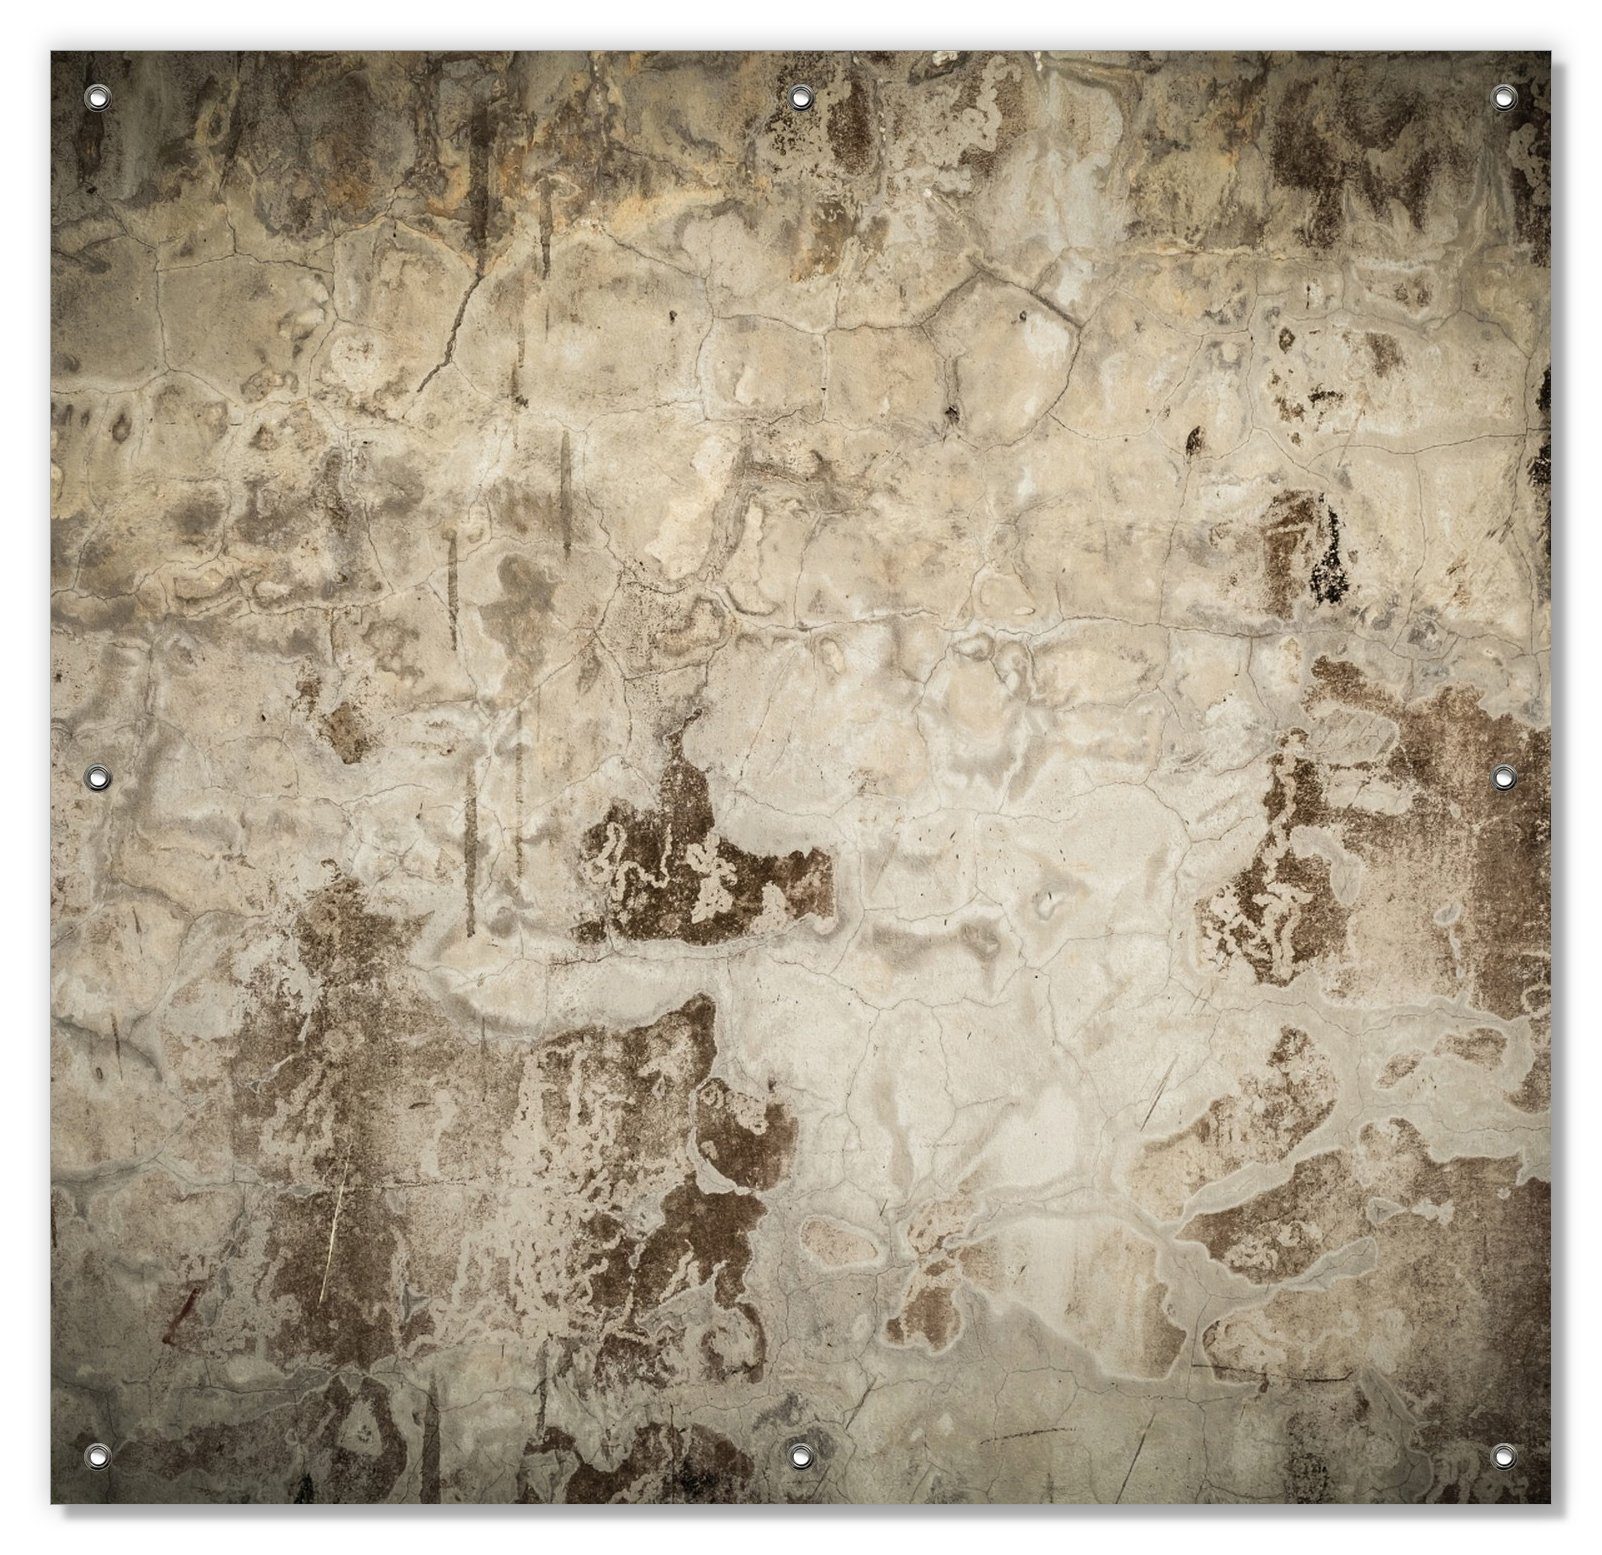 Sonnenschutz Alte schmutzige Wand blickdicht, mit und Saugnäpfen, Beton wiederablösbar mit aus Farbe, wiederverwendbar abblätternder Wallario